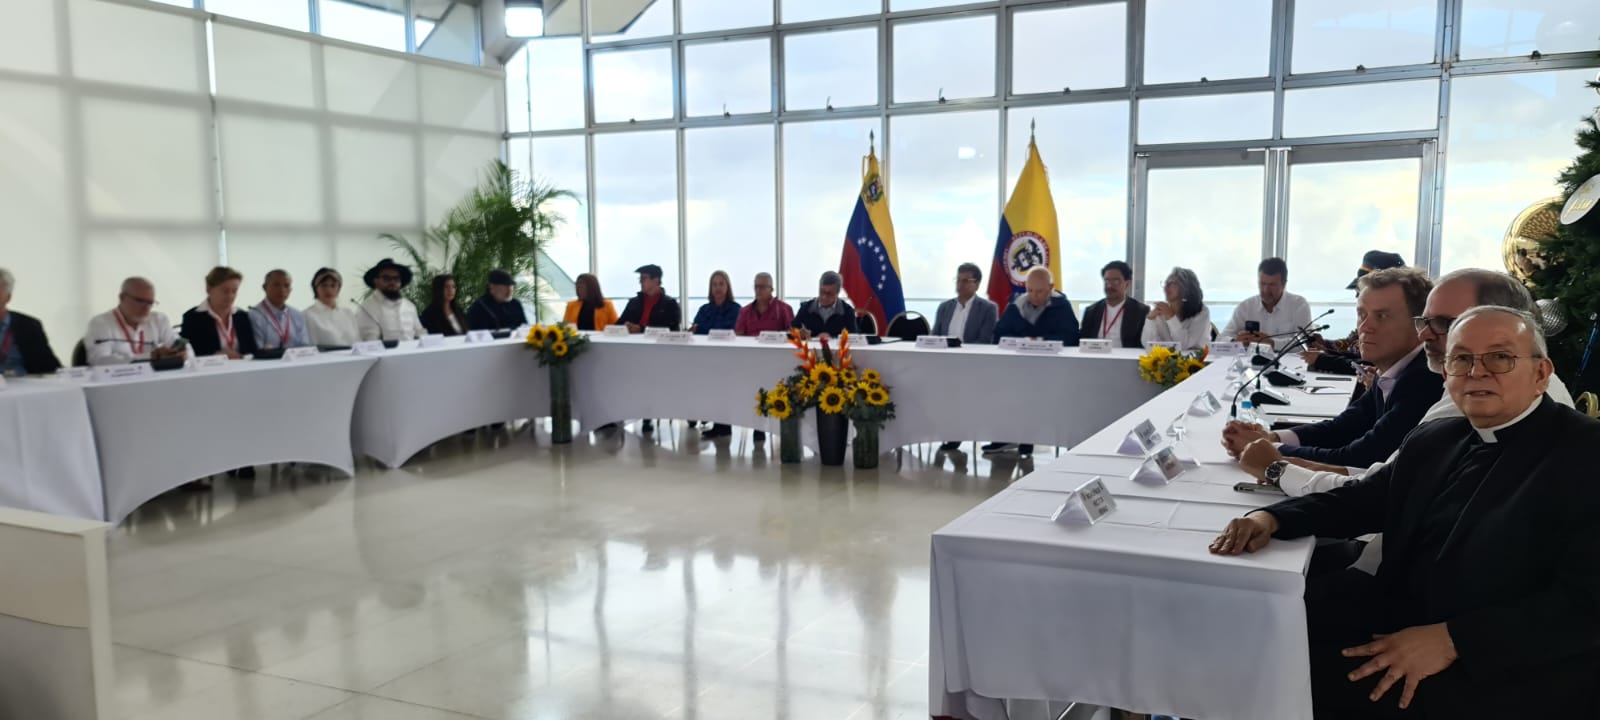 Este lunes 21 de noviembre se reinstaló la mesa de diálogos entre el Gobierno nacional y el Ejército de Liberación Nacional, ELN, desde Caracas. Cortesía